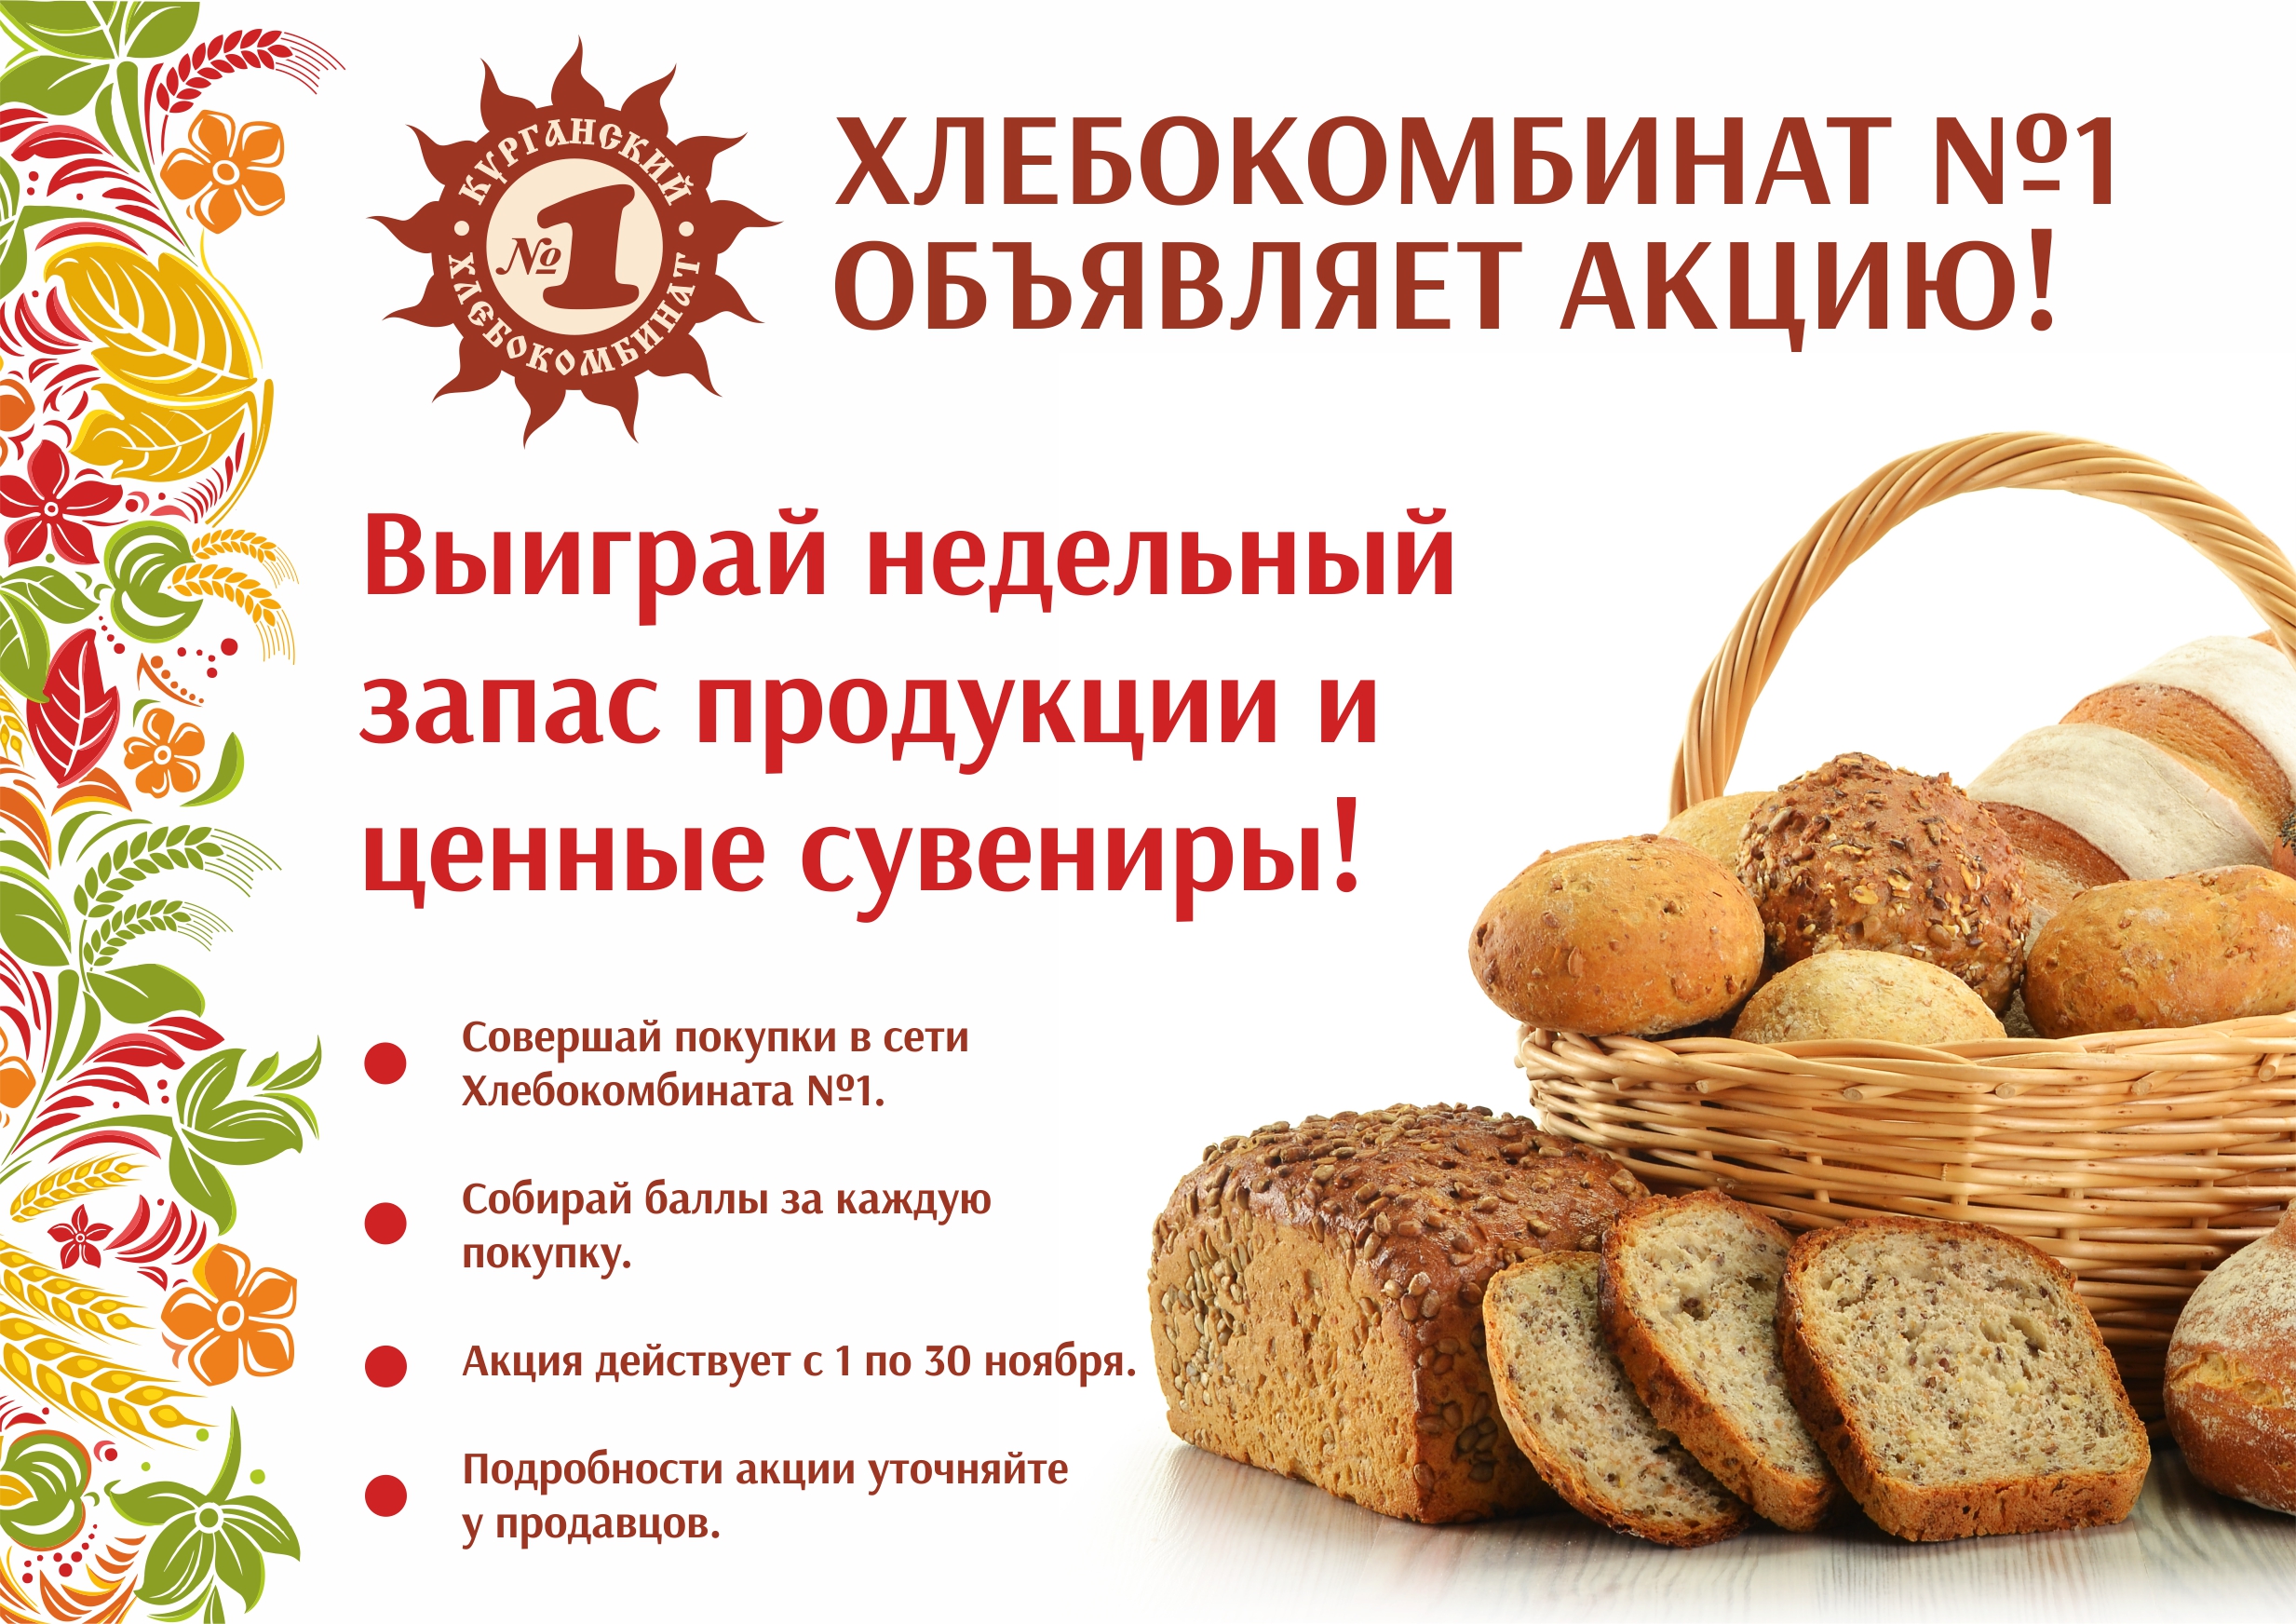 Сайт хлебозавода 1. Псковский хлебокомбинат Псков. Первый Курганский хлебокомбинат. Псковский хлебокомбинат магазины. Реклама хлебозавода.